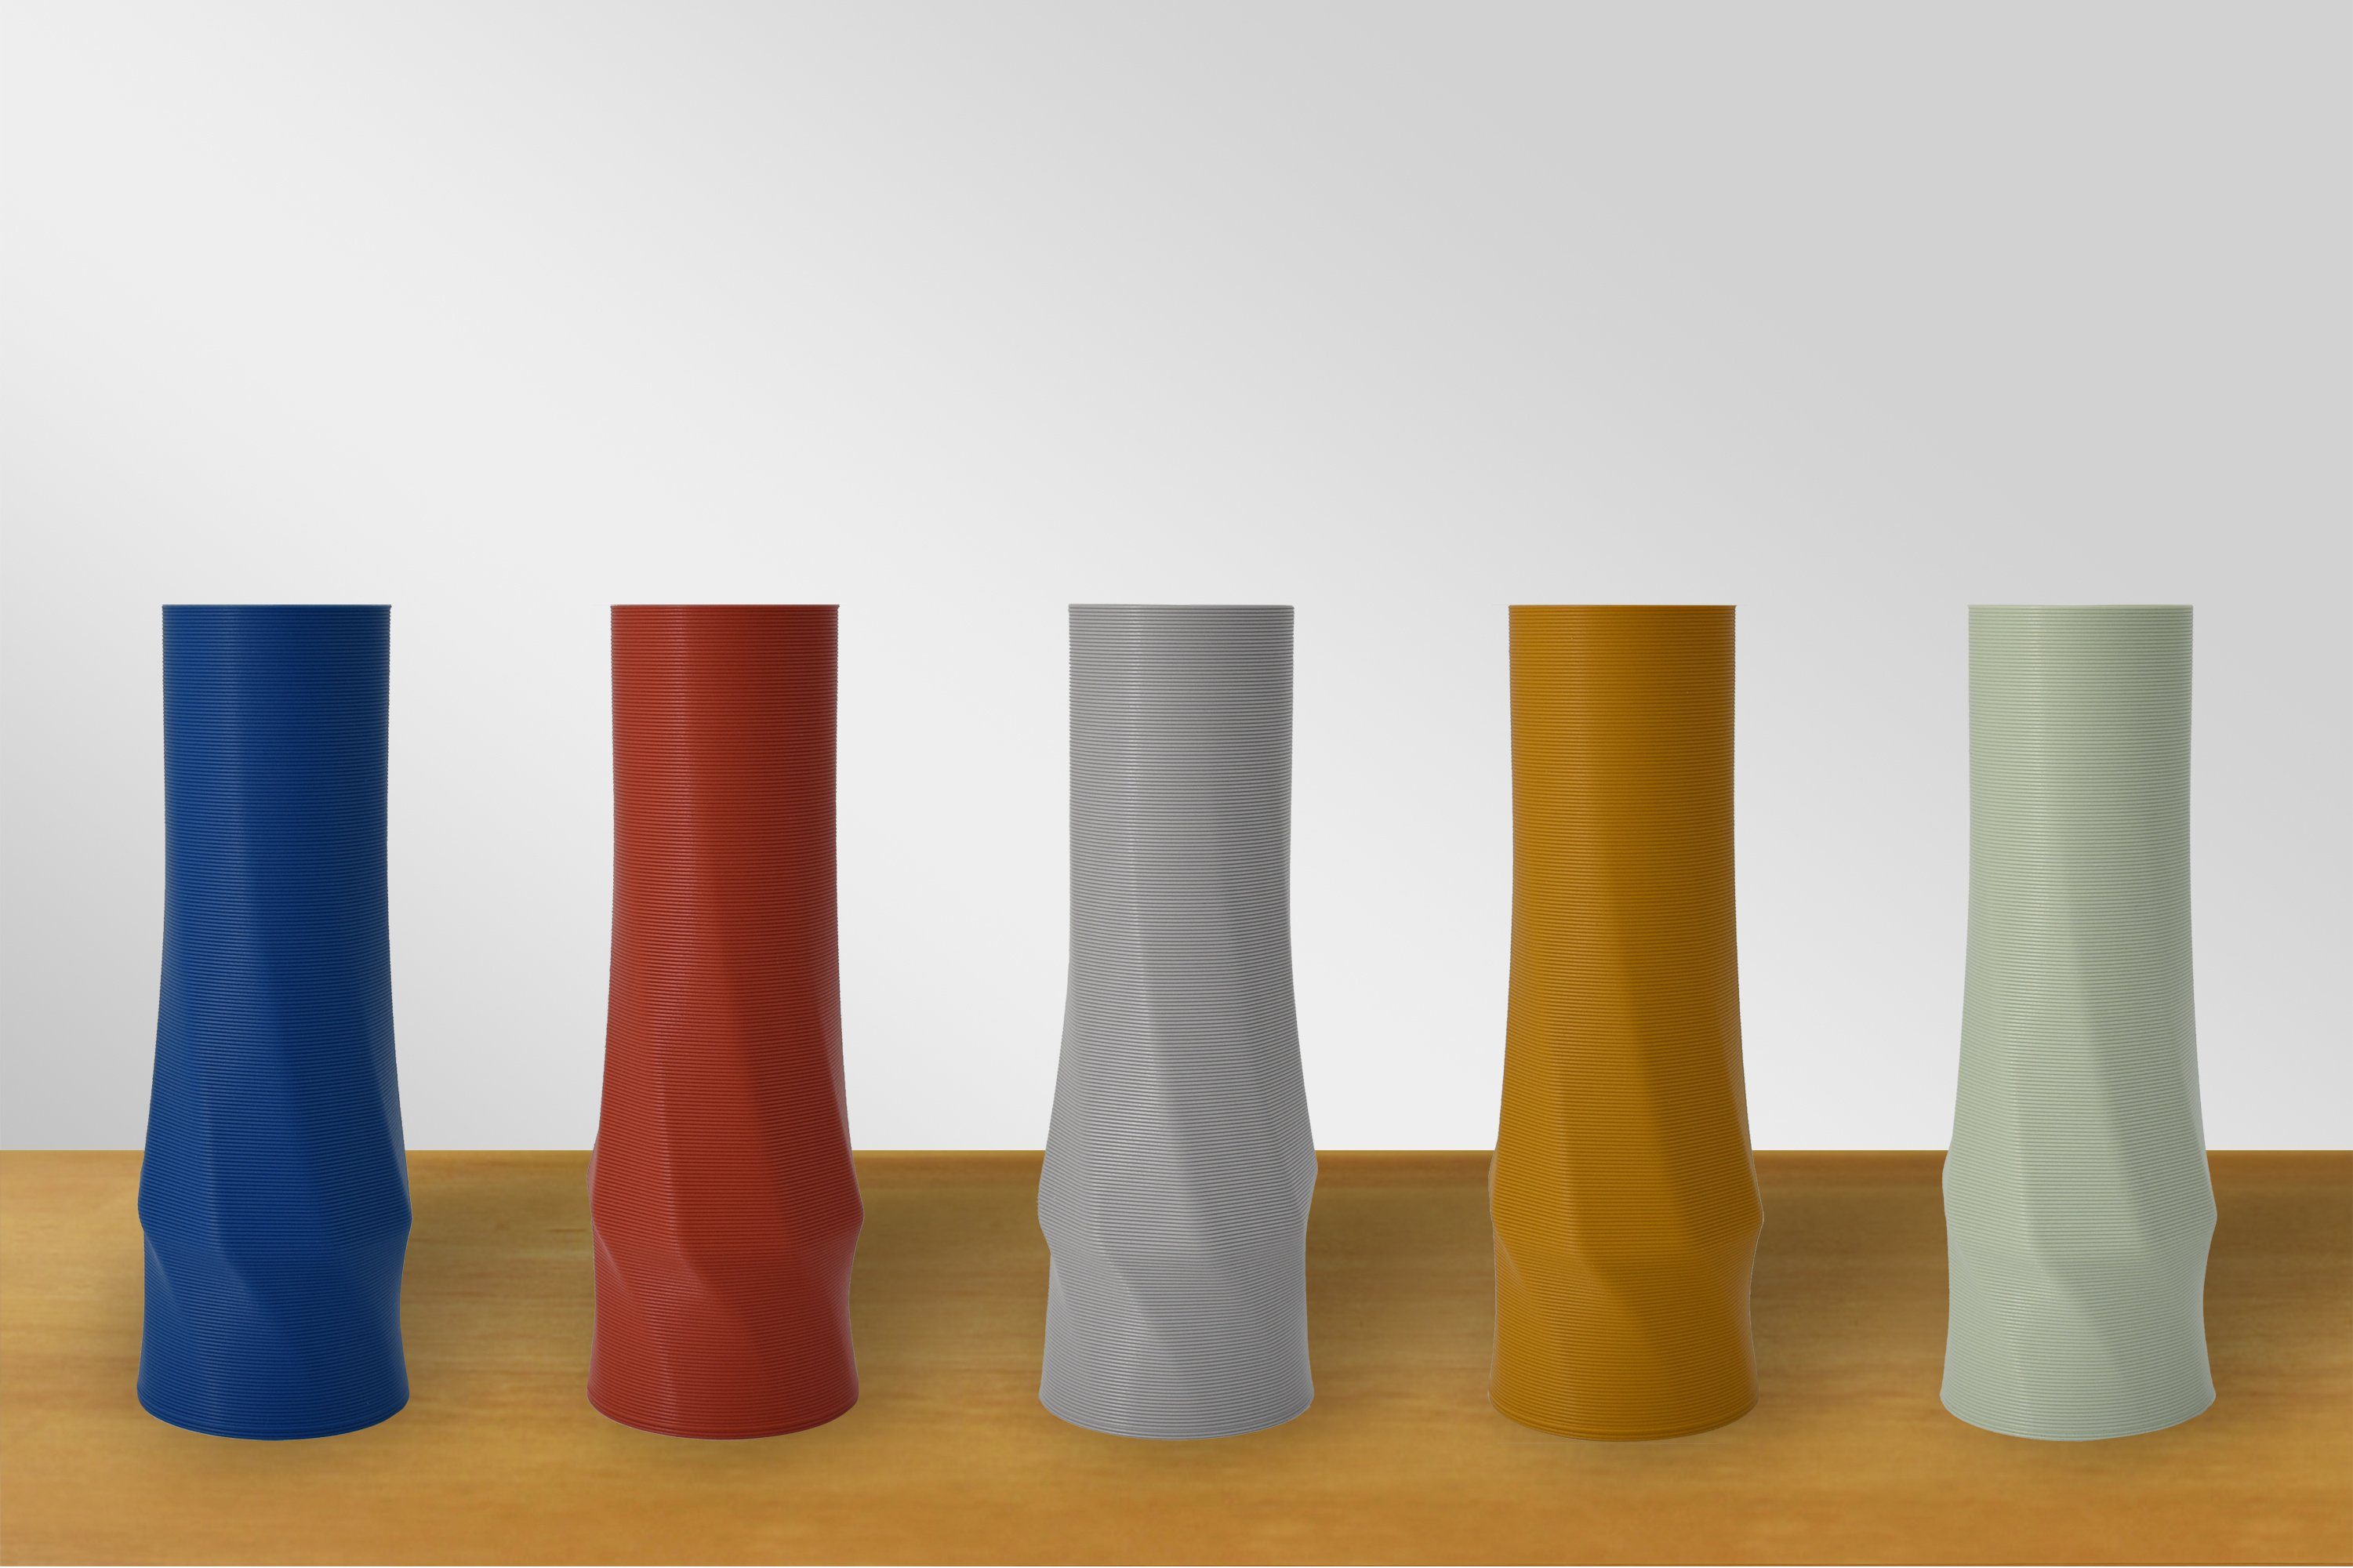 innerhalb Materials Struktur circle Leichte (basic), Vasen, Ocker 3D-Druck vase Dekovase 1 the Farben, 100% Decorations - (gelb) - des Wasserdicht; (Einzelmodell, 3D Vase), viele Shapes (Rillung)